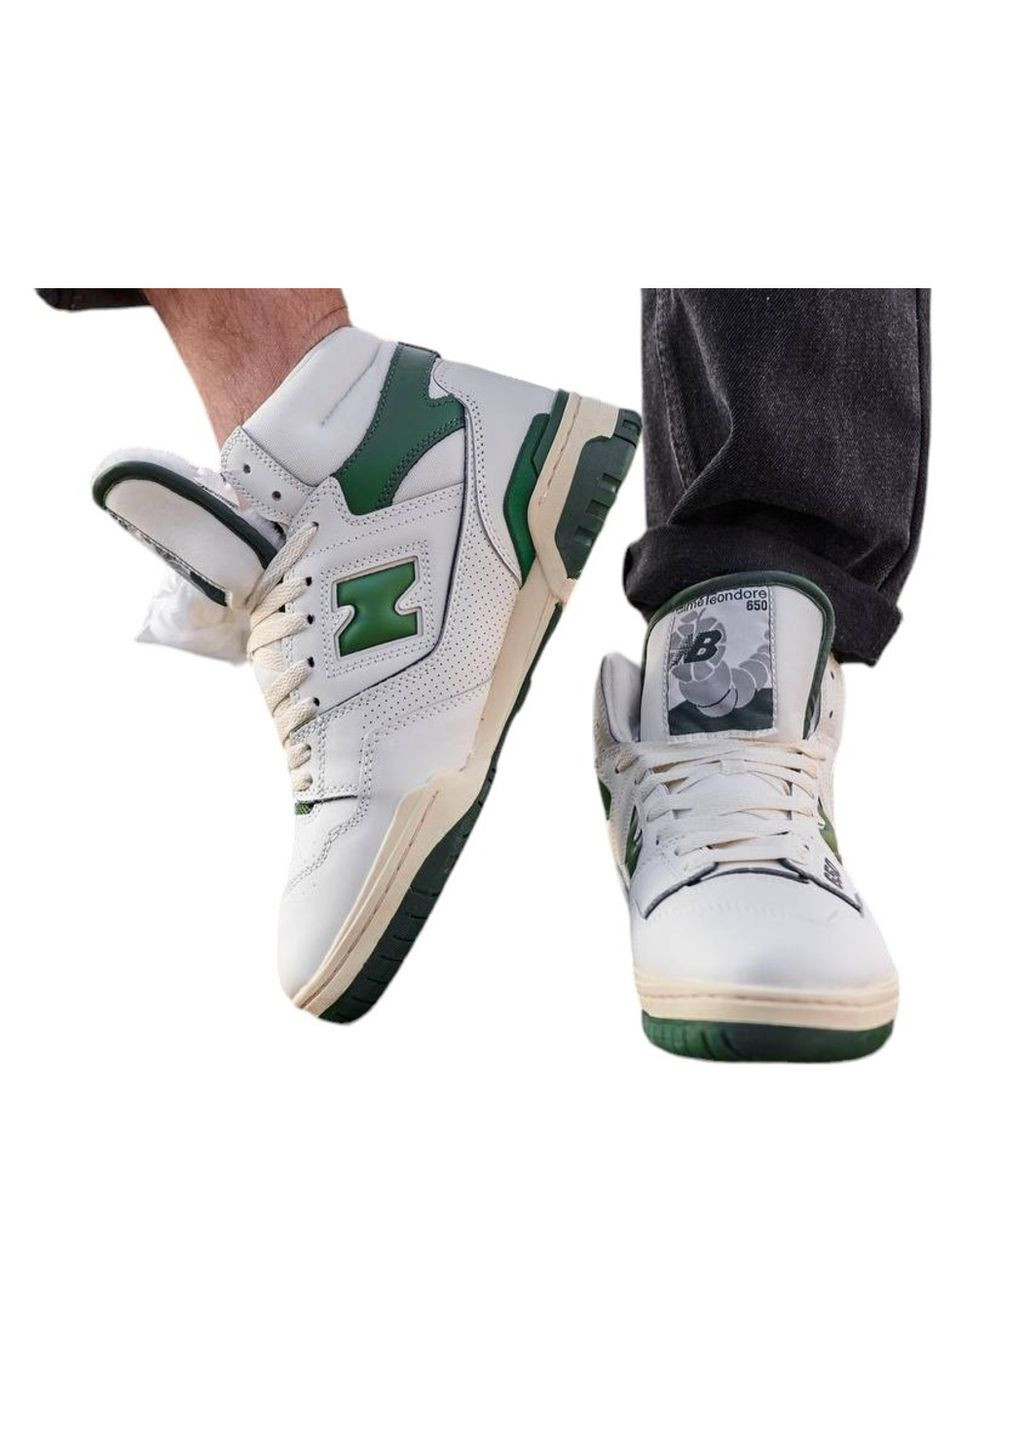 Белые демисезонные кроссовки мужские hight white green fur, вьетнам New Balance 650